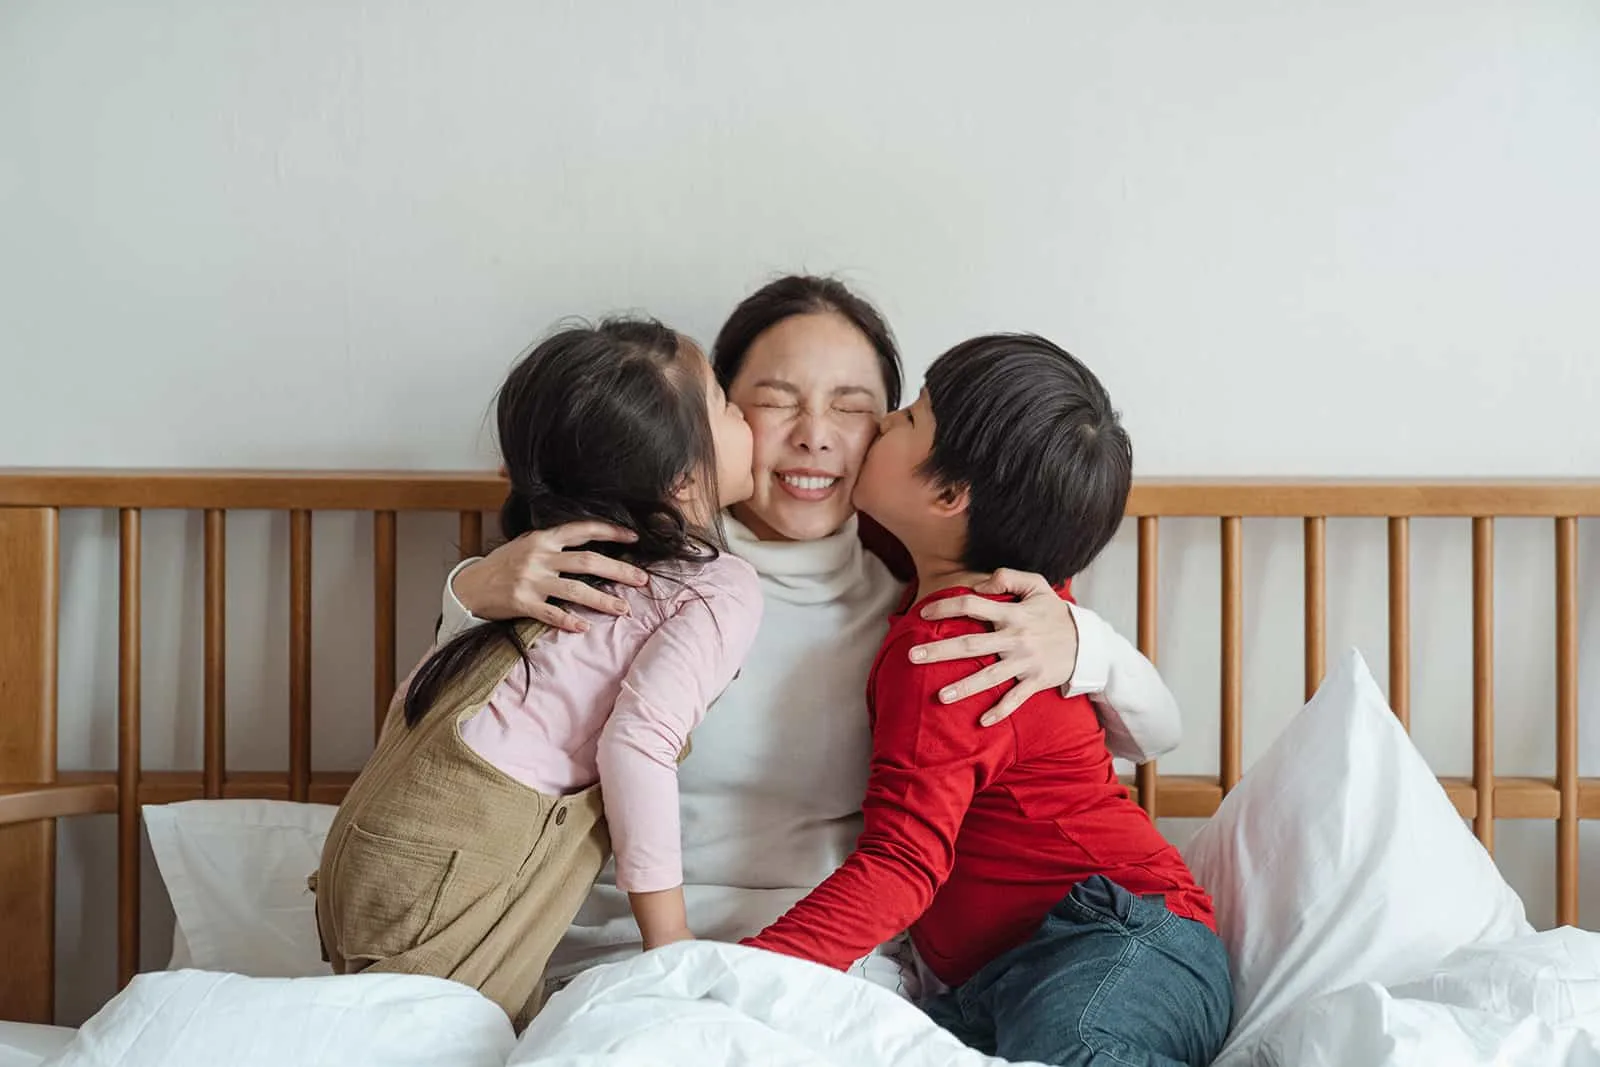 Kinder küssen ihre Mutter auf eine Wange, während sie auf dem Bett sitzen